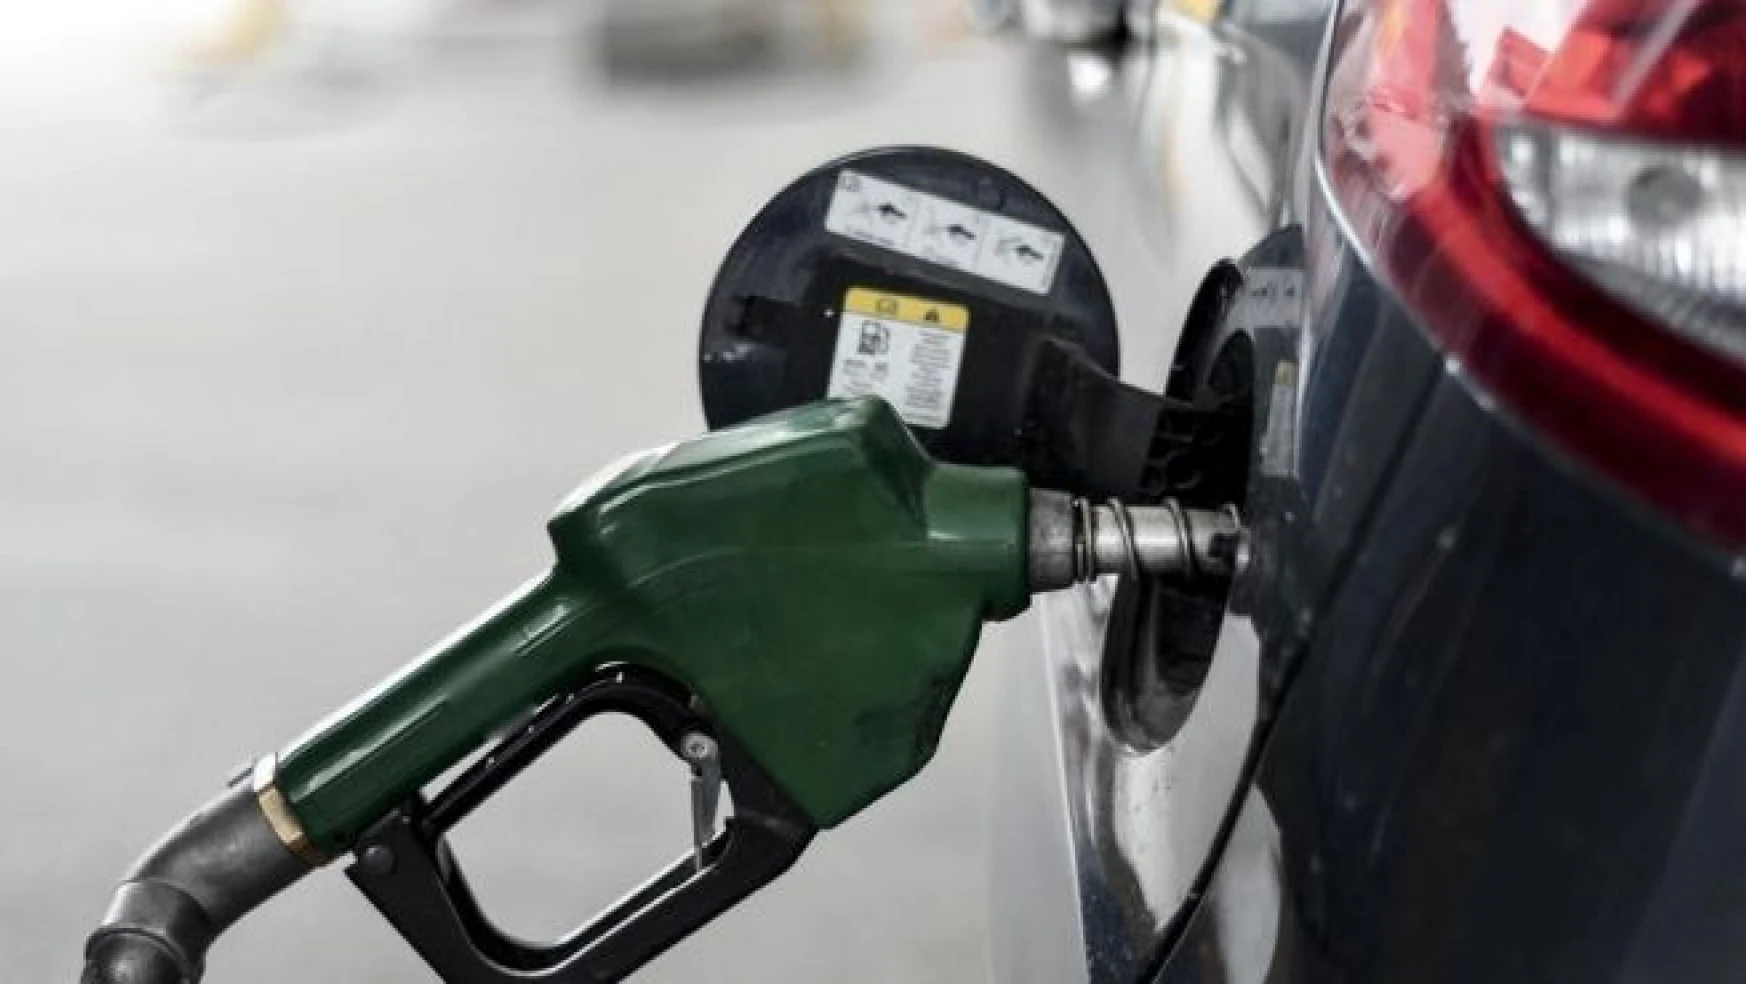 Benzinin litre fiyatı 8 kuruş arttı